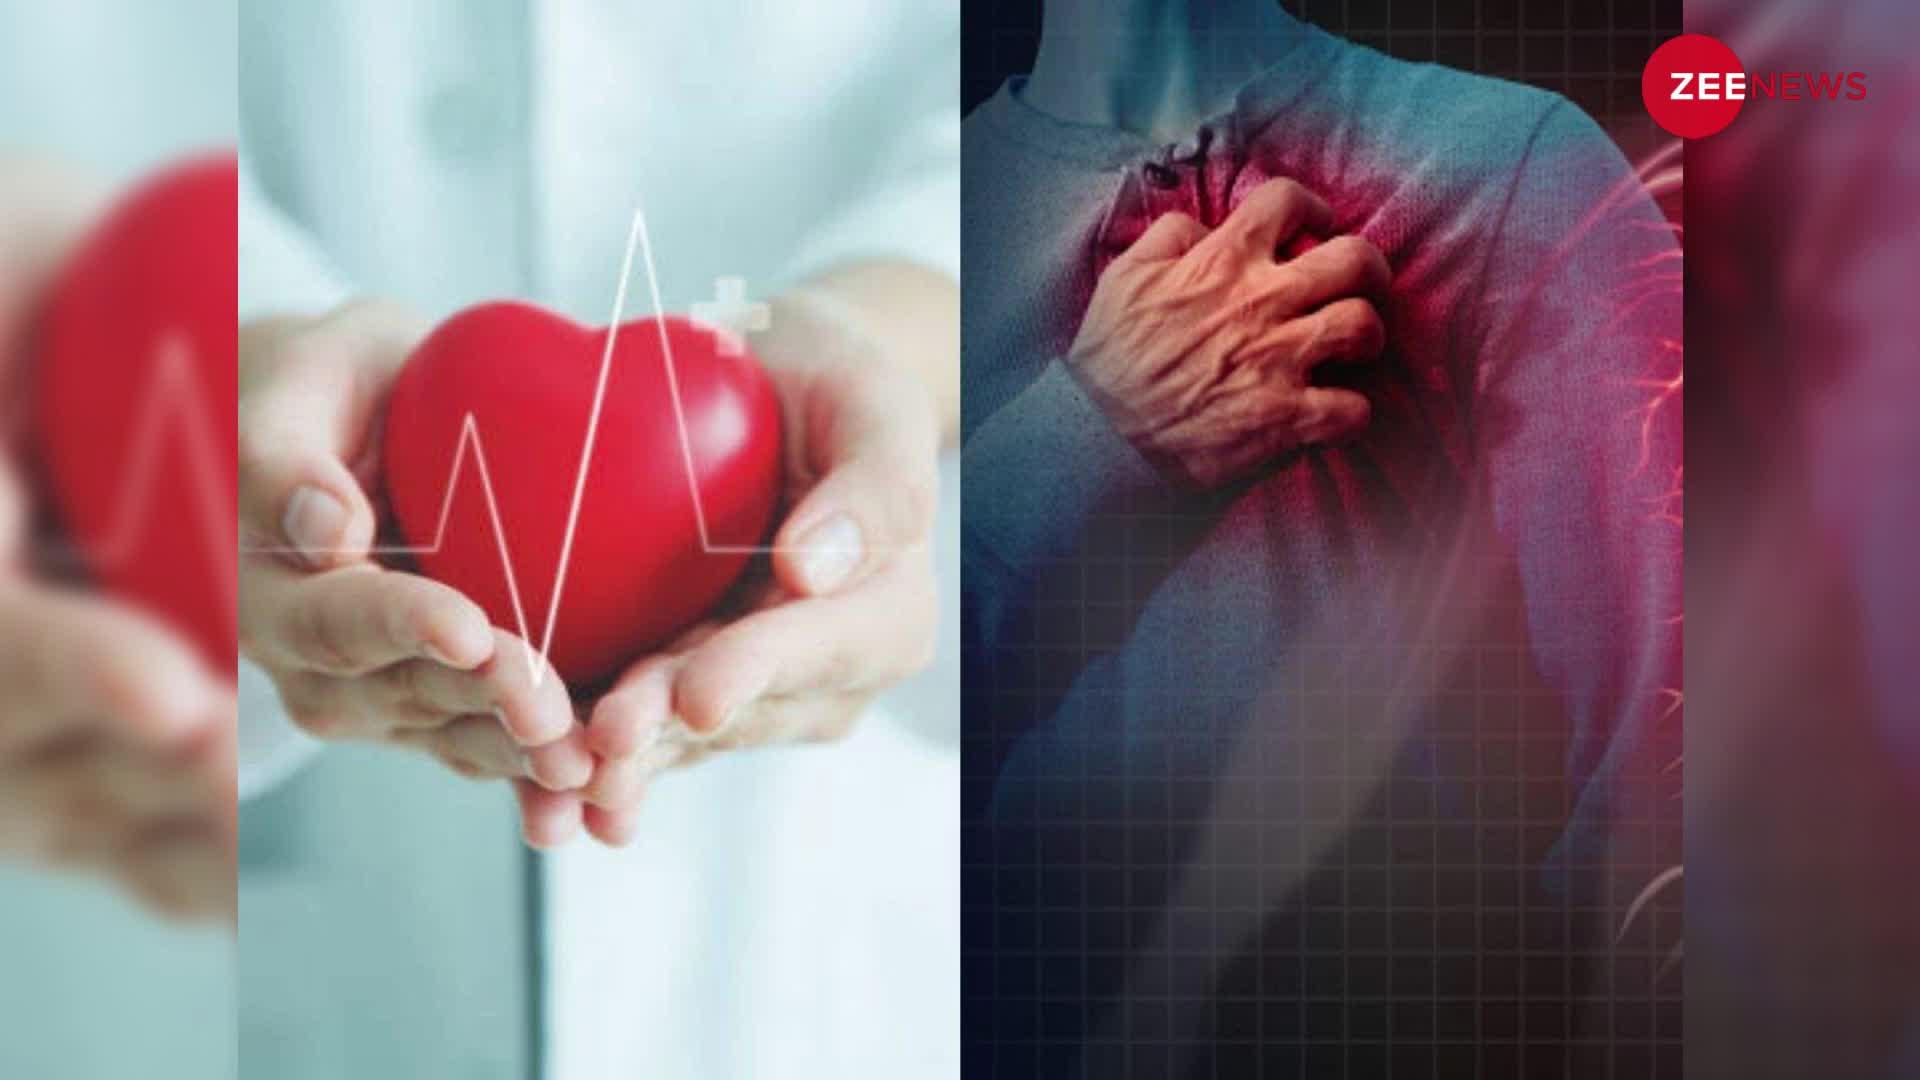 Heart Attack Symptoms: जवां उम्र में हो रही है दिल से जुड़ी परेशानी, युवाओं में बढ़ते हार्ट अटैक का खतरा